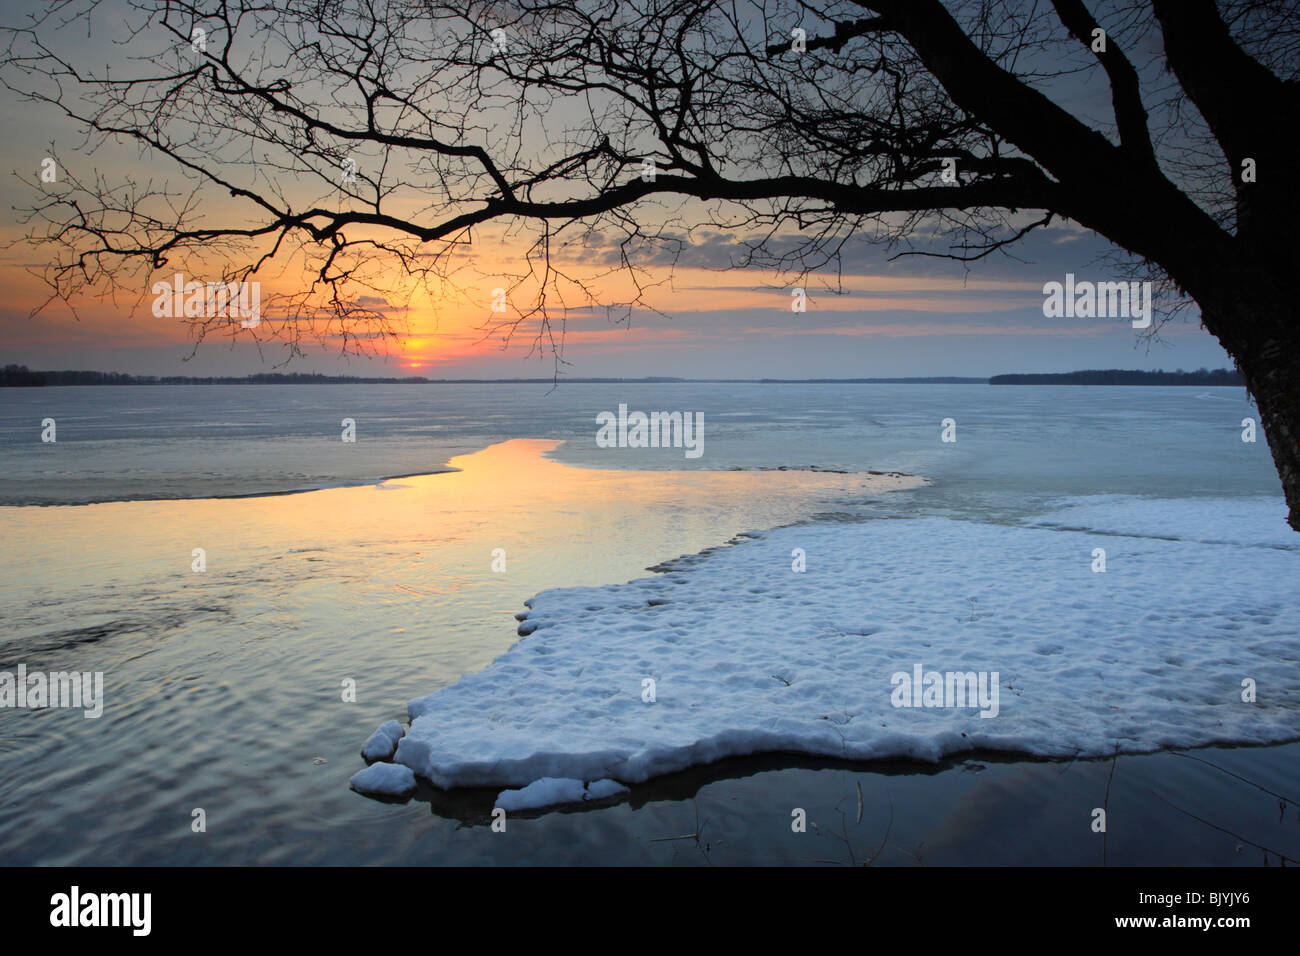 Blick auf den Sonnenuntergang am See Saadjärv. Eisschmelze, Ende März - Anfang des Frühlings. Stockfoto